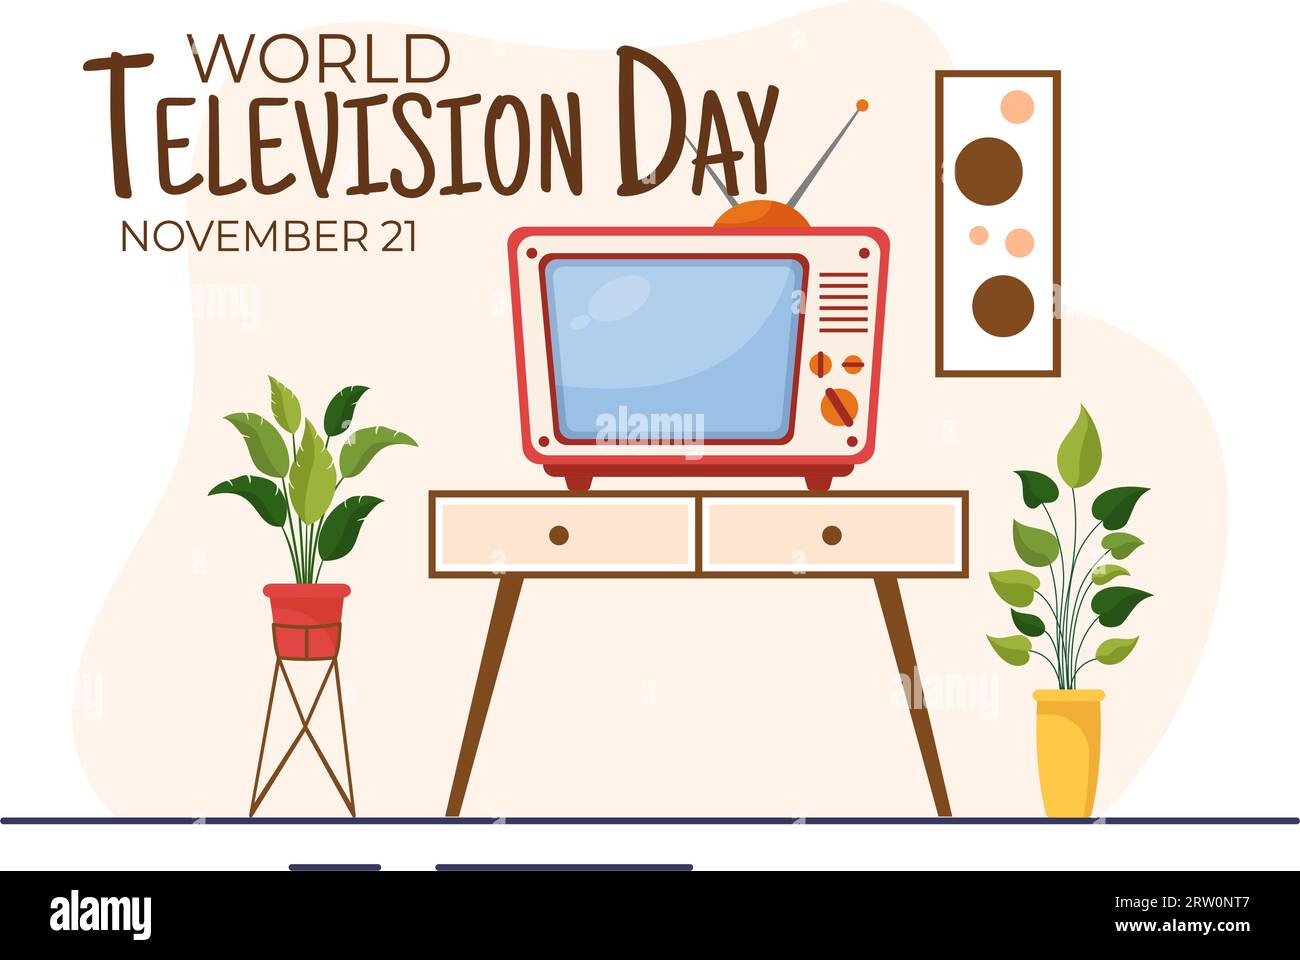 World Television Day Vector Illustration am 21. november mit TV für Web Banner oder Poster in Flat Cartoon Hintergrund Design Stock Vektor